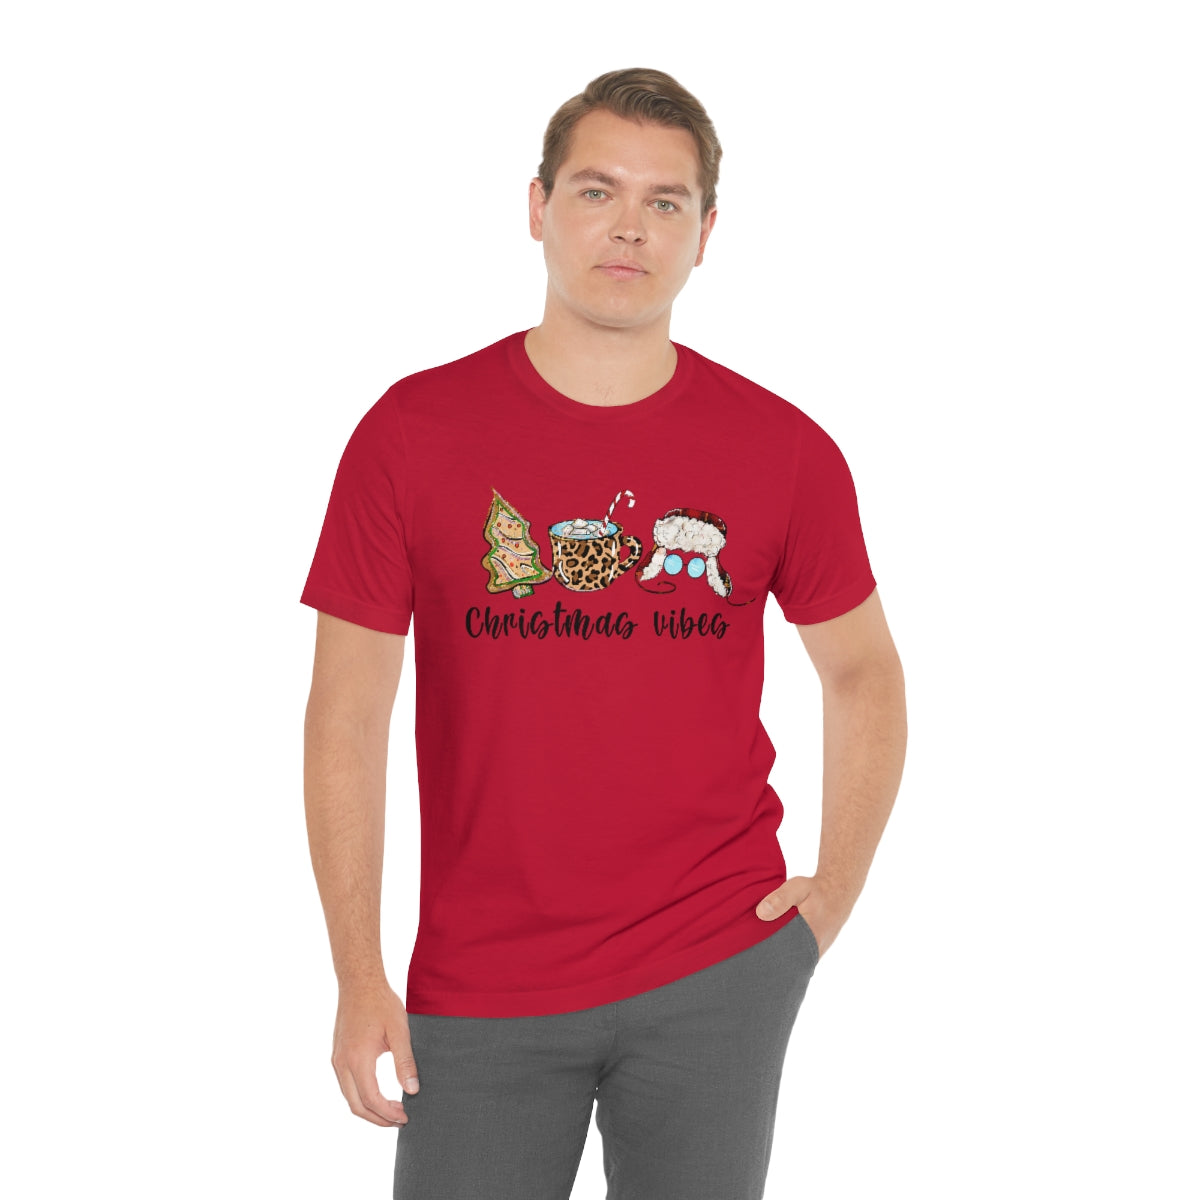 Christmas Vibes Shirt For Adults